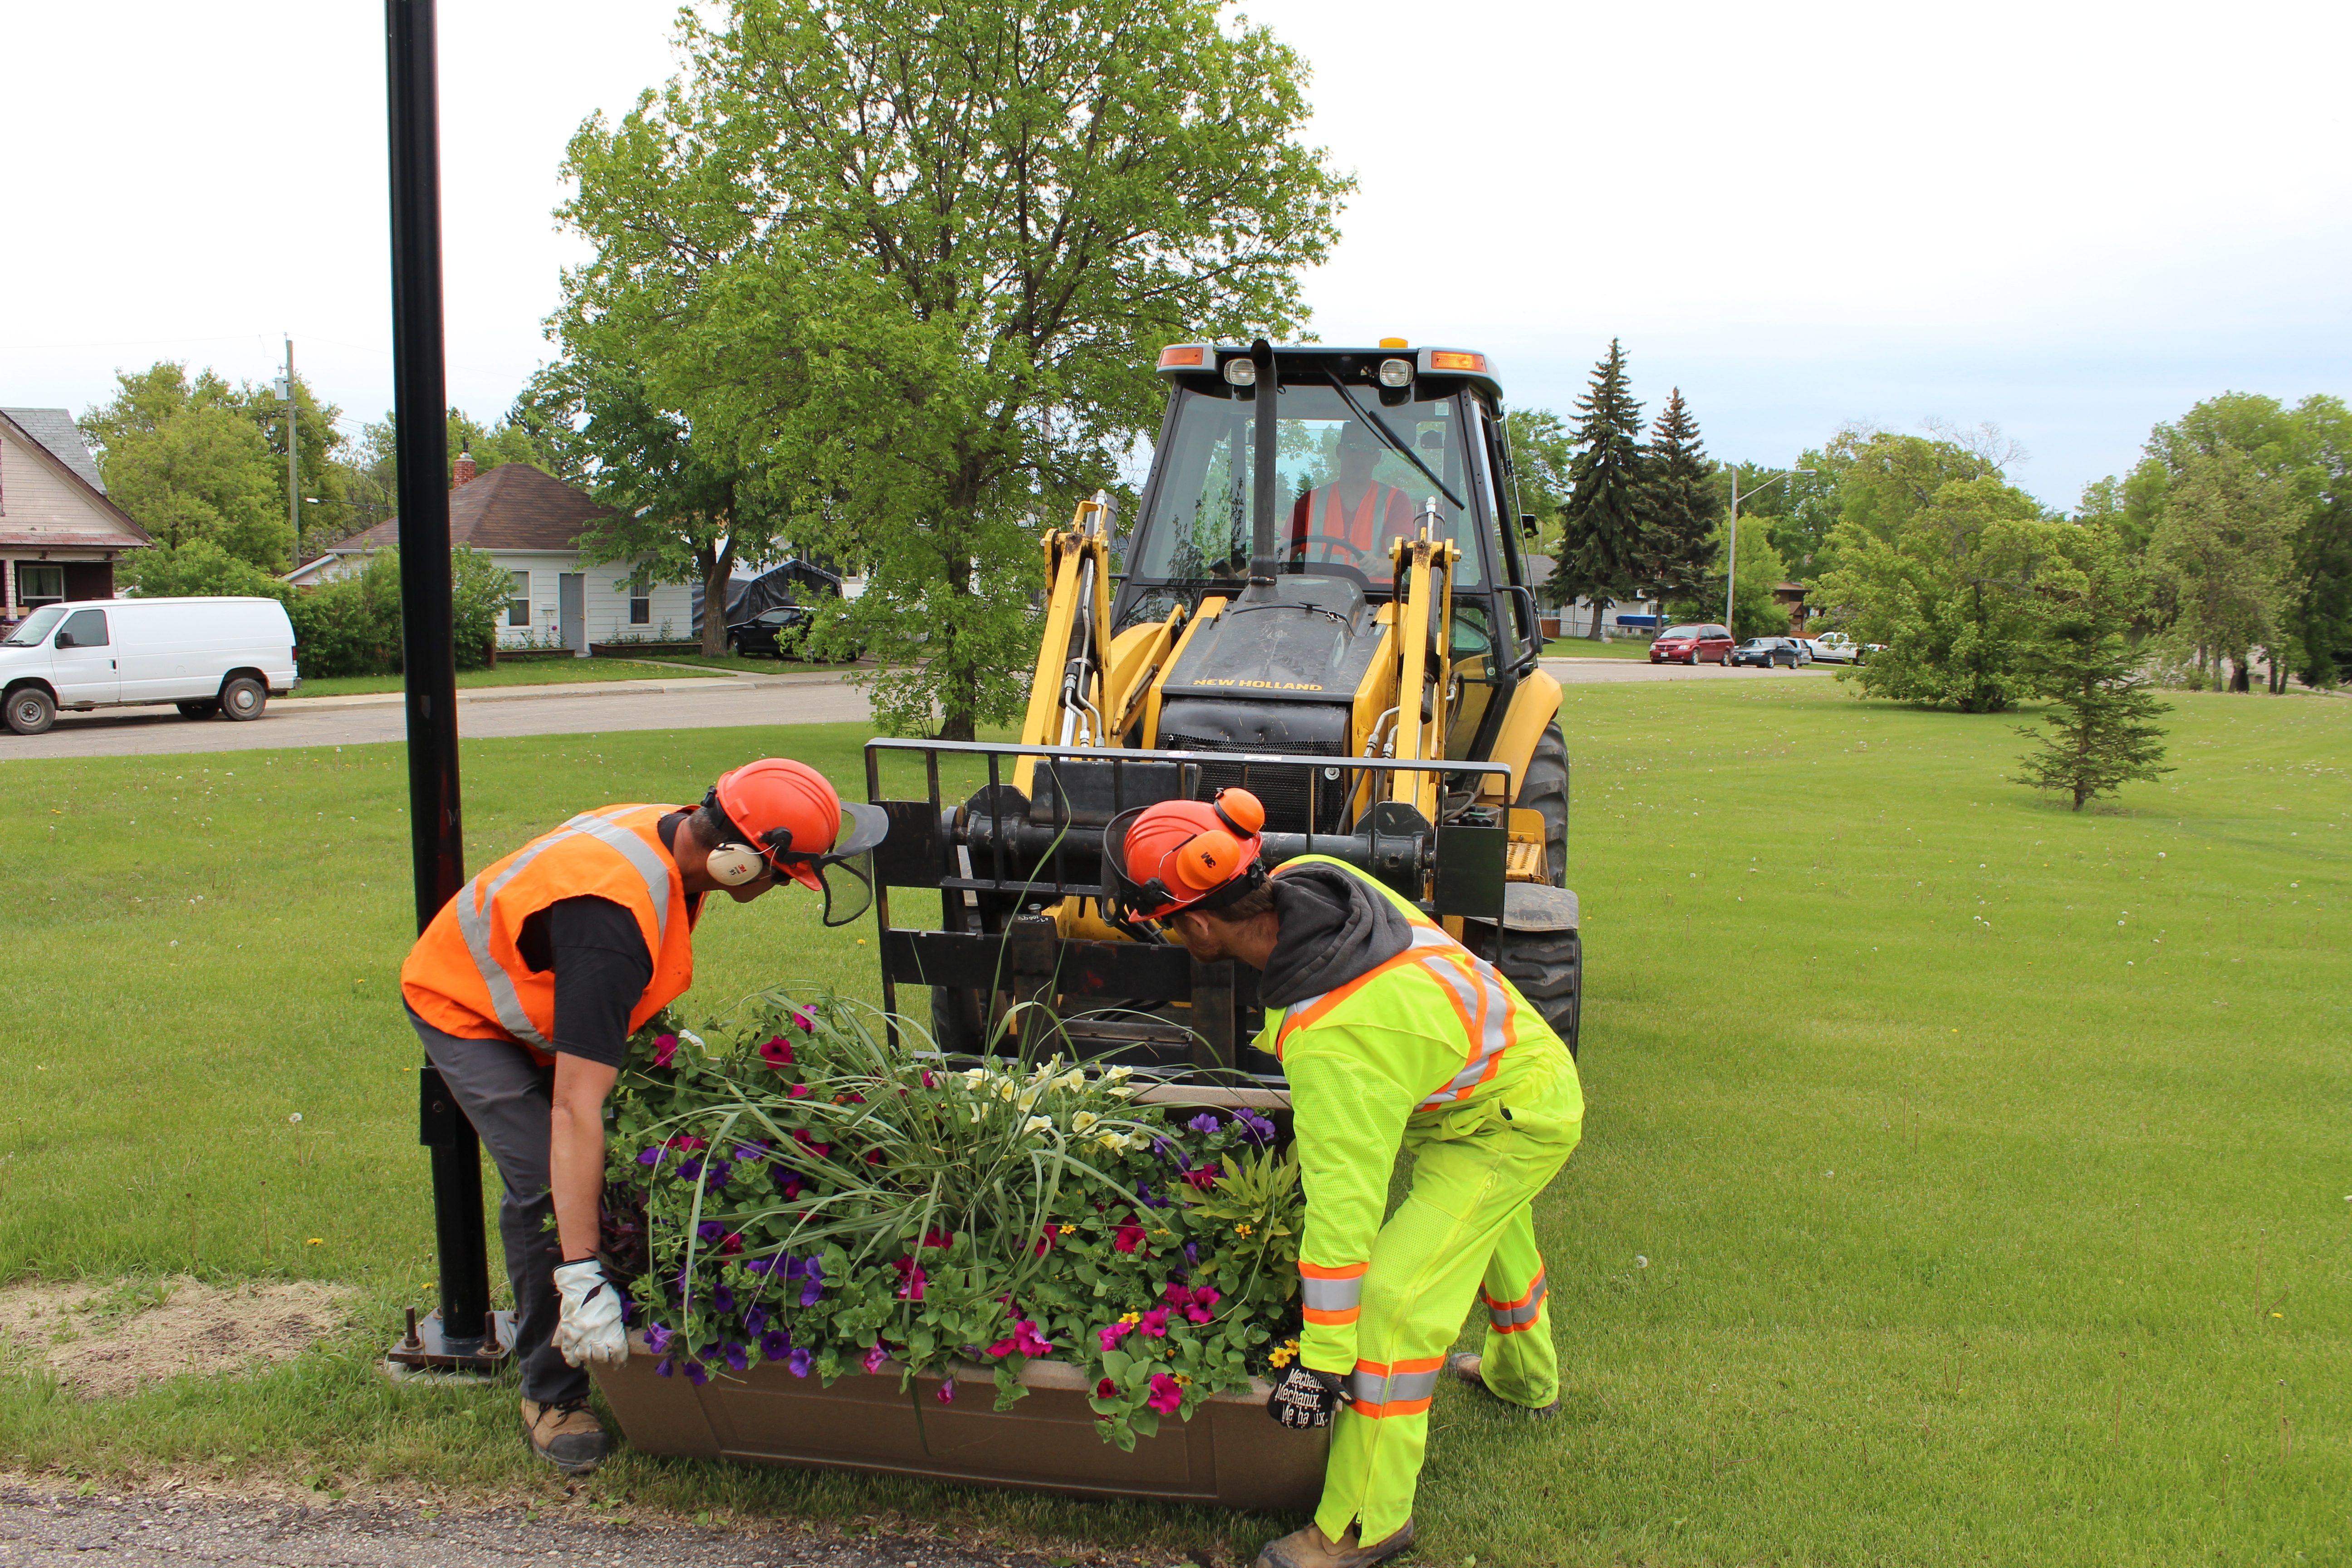 City workers placing flowers around Brandon